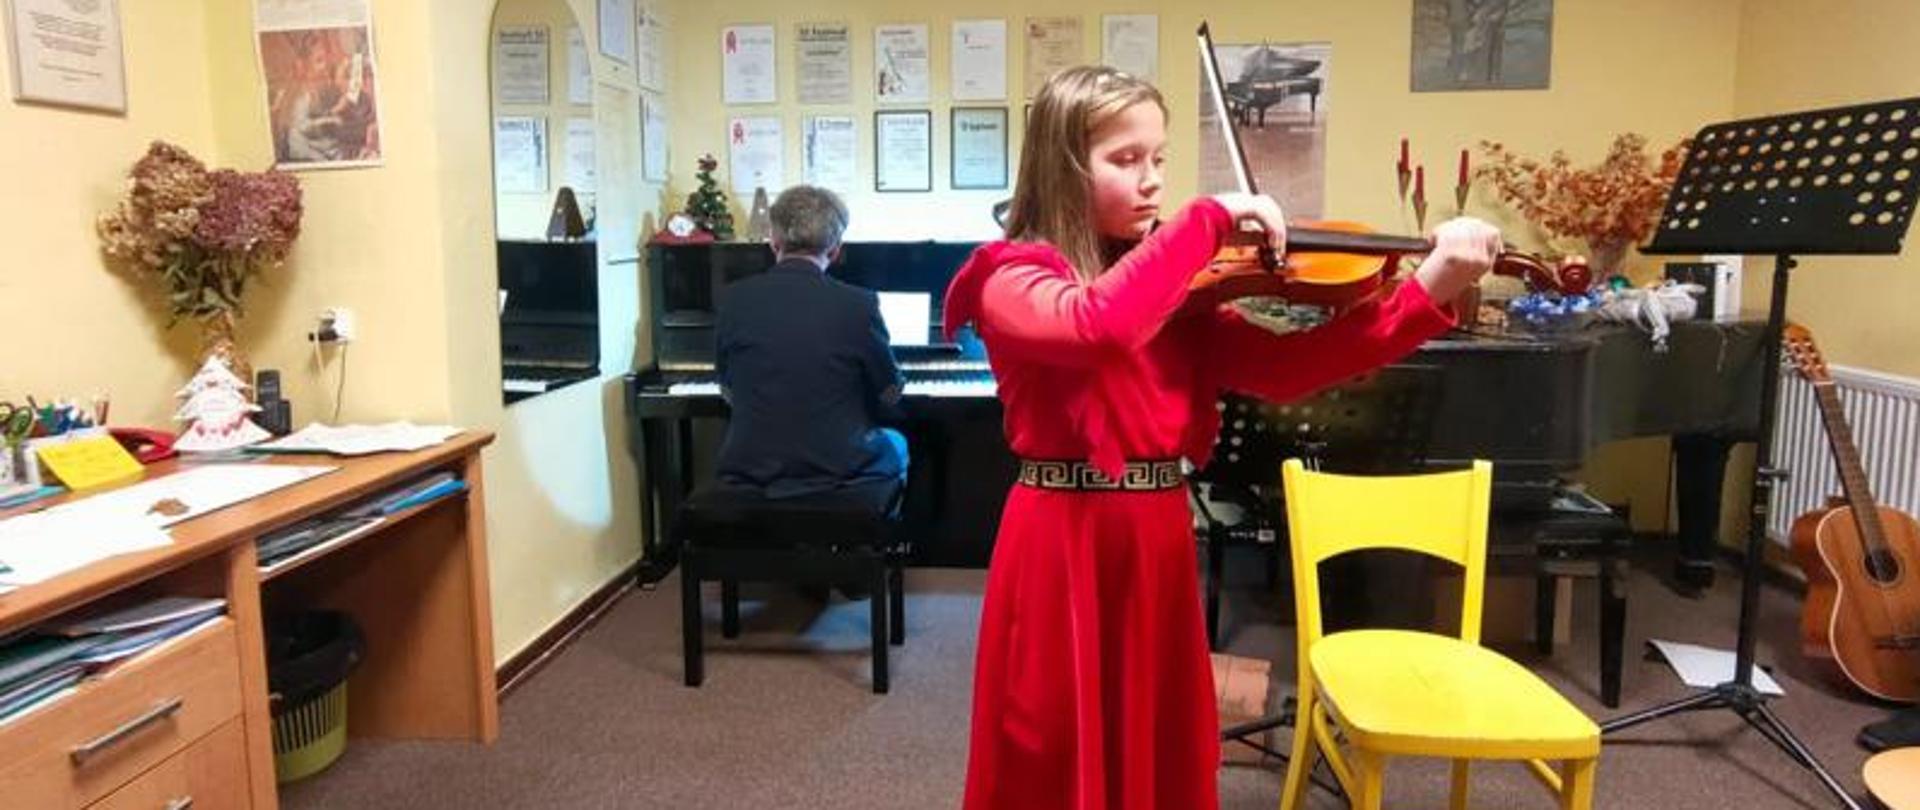 Zdjęcie kolorowe, dziewczynka w czerwonej sukience ze skrzypcami w rękach. Za dziewczynką przy pianinie siedzi akompaniator.